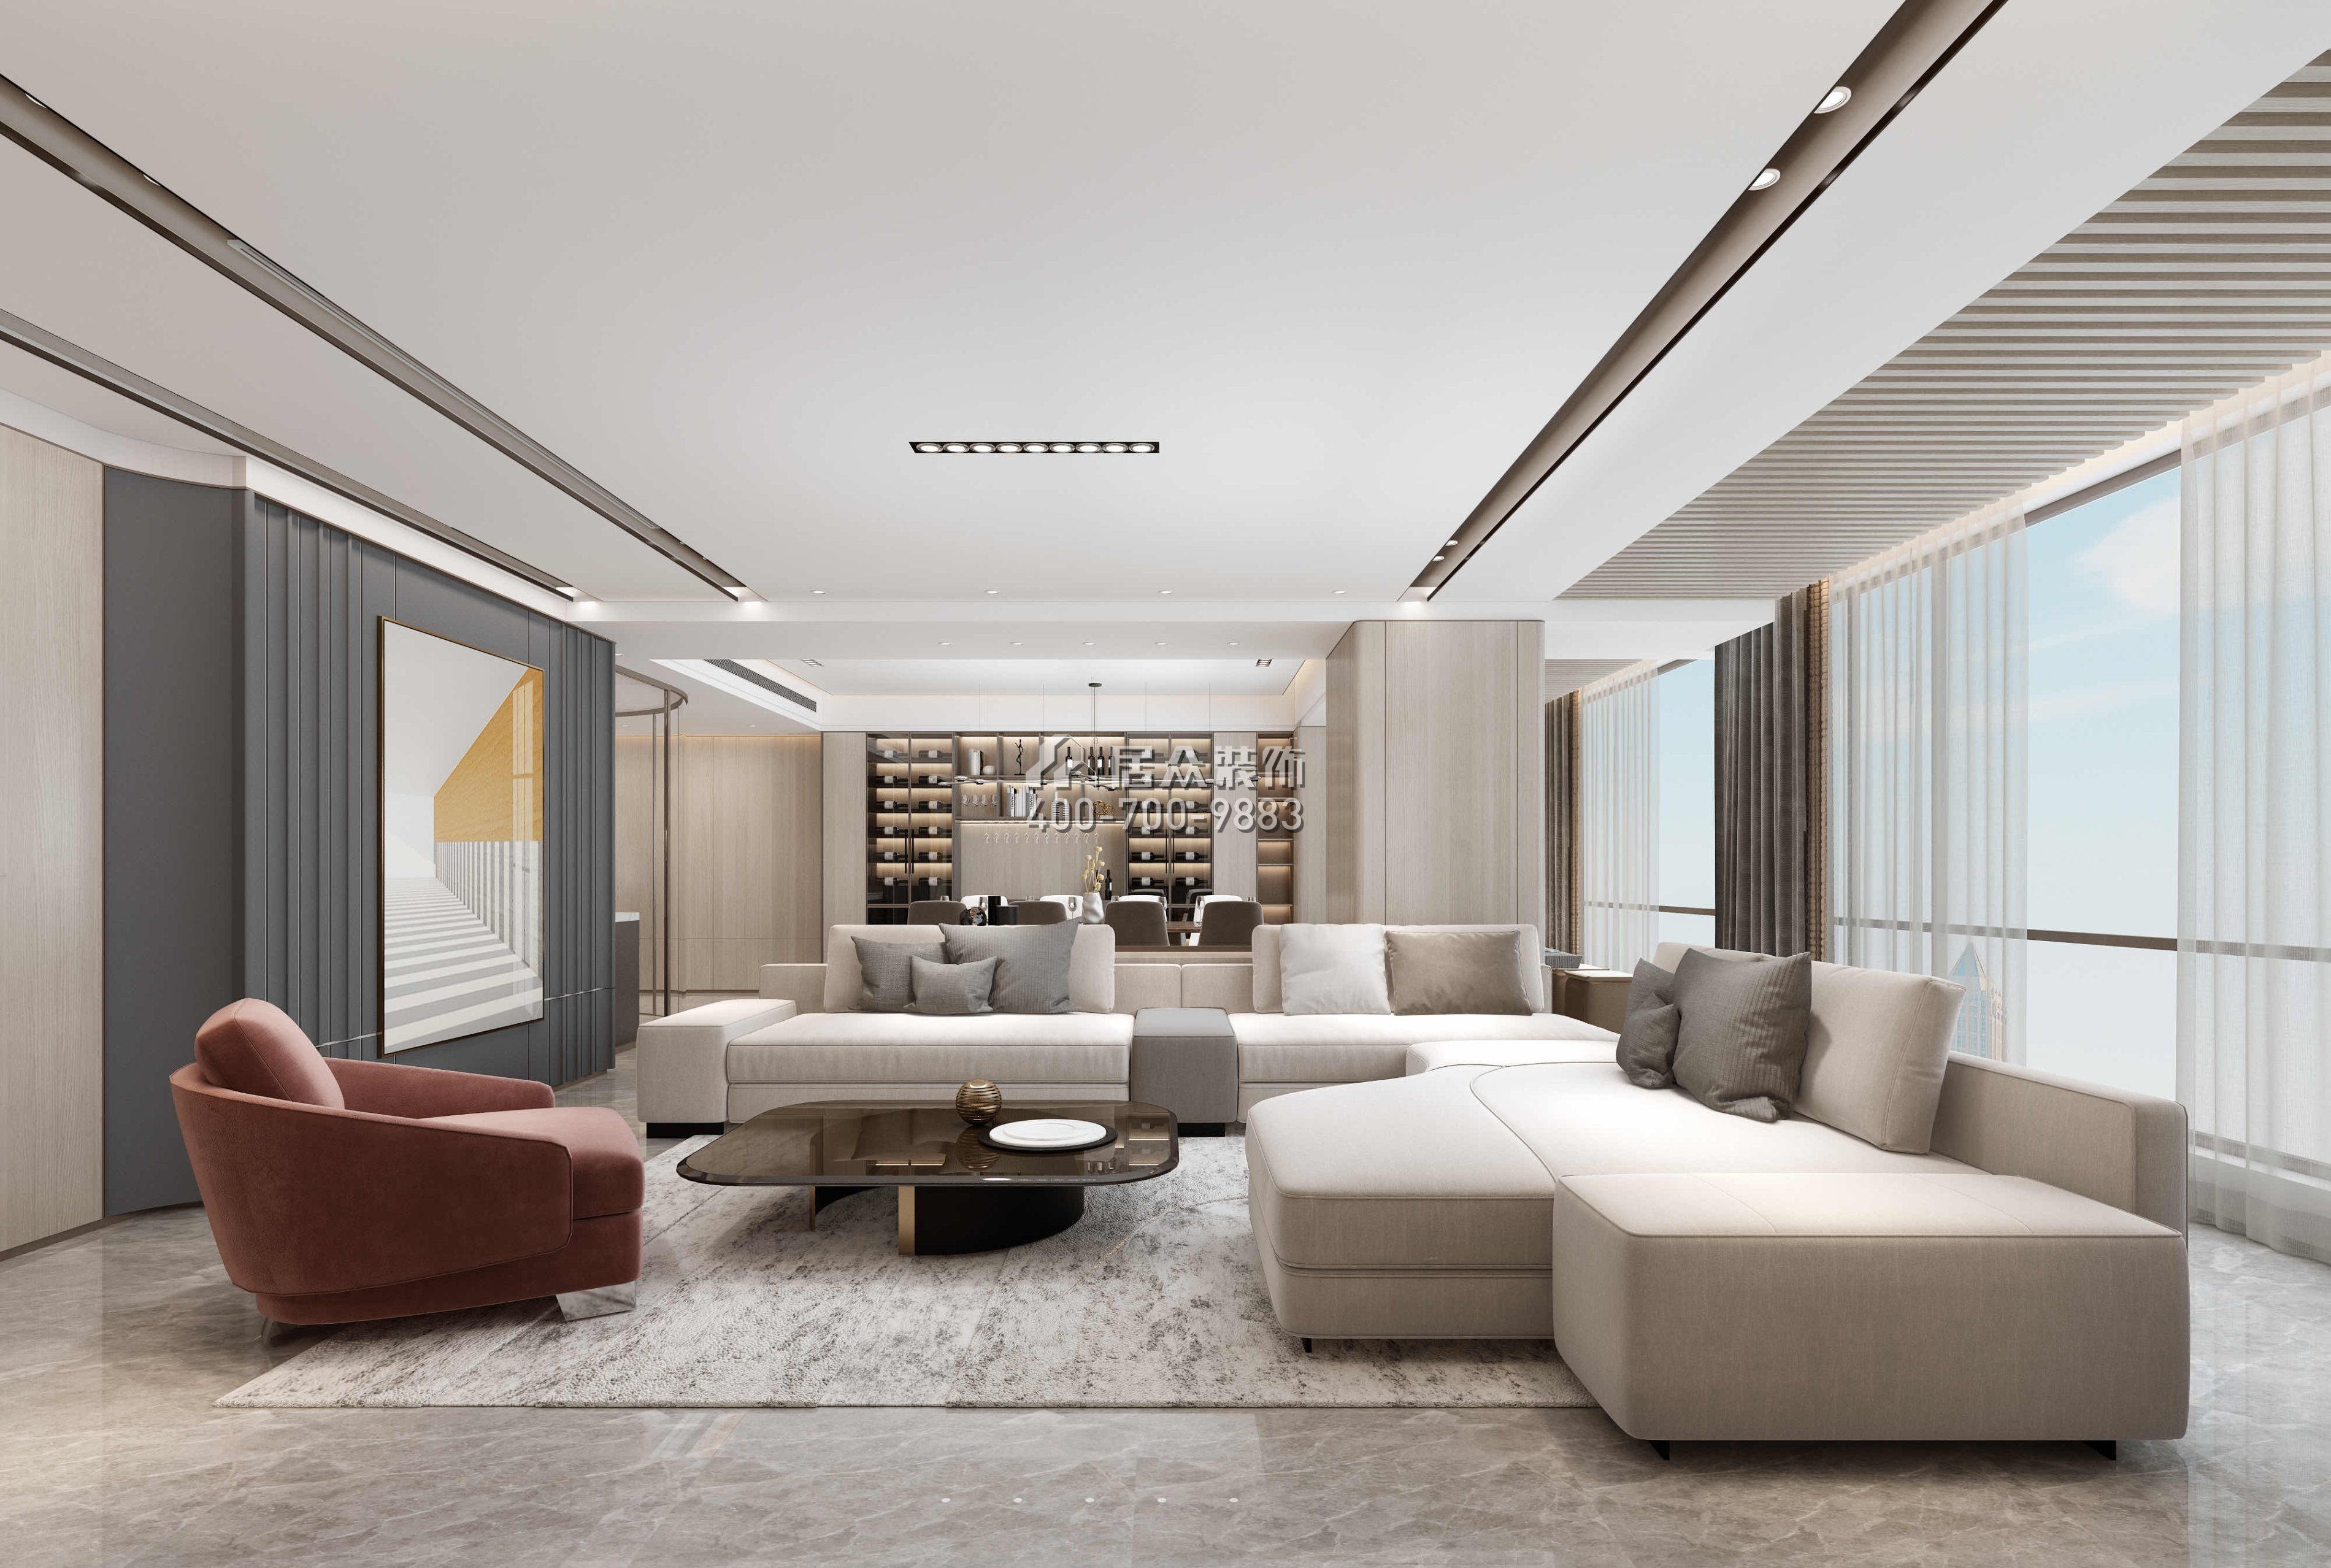 華潤城潤府156平方米現代簡約風格平層戶型客廳裝修效果圖